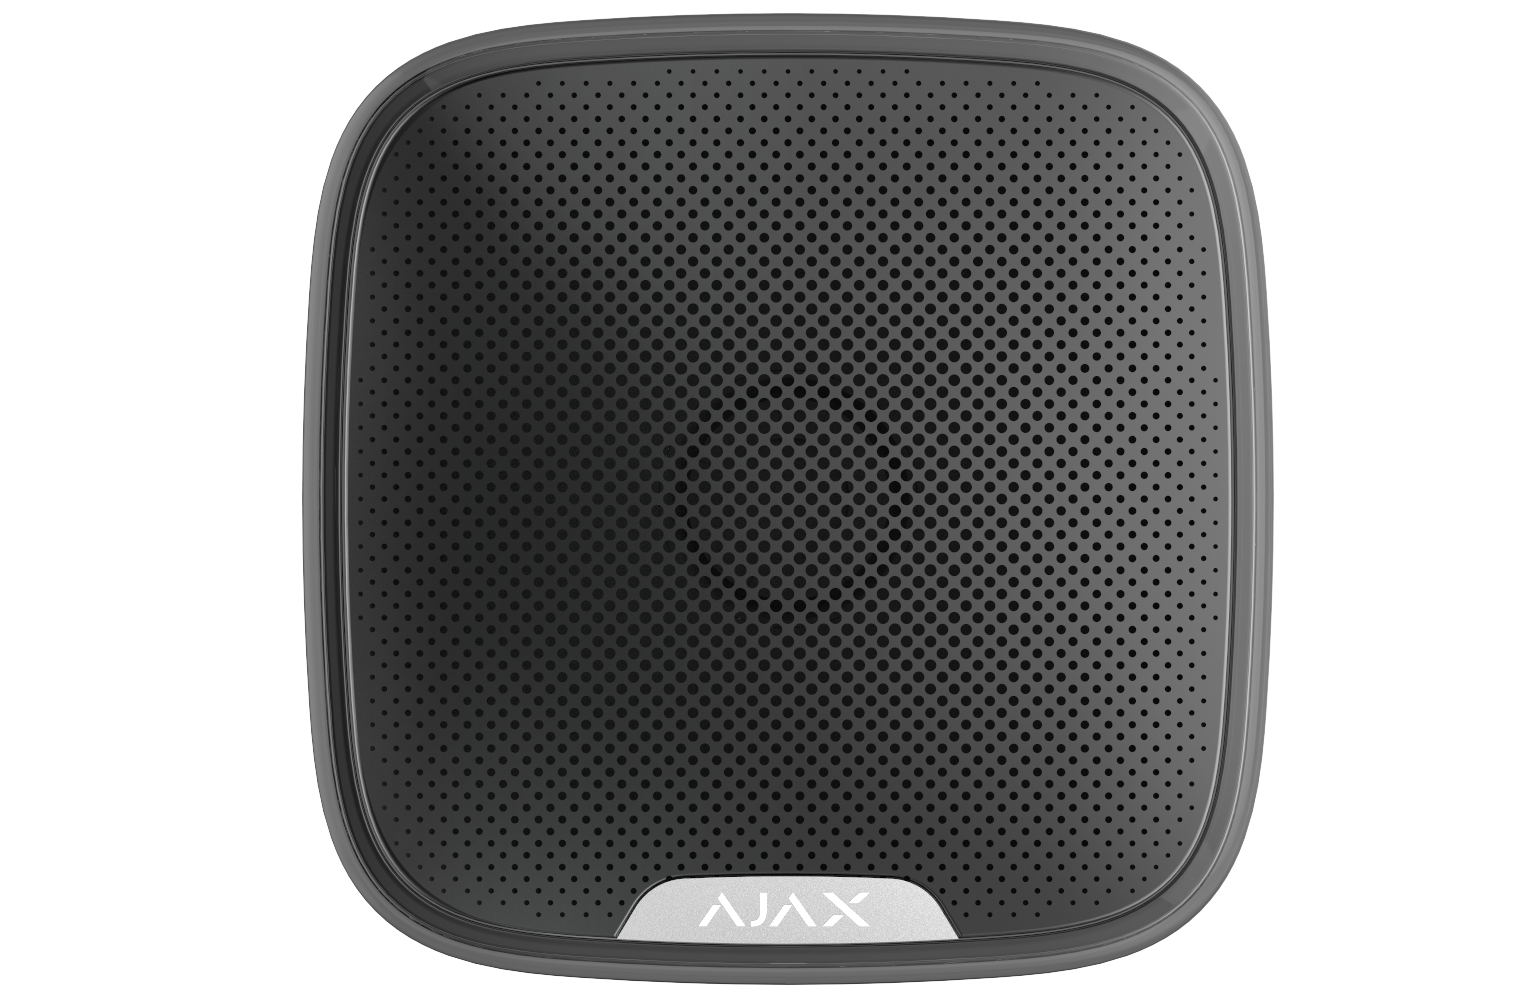 Ajax Wireless Sirens